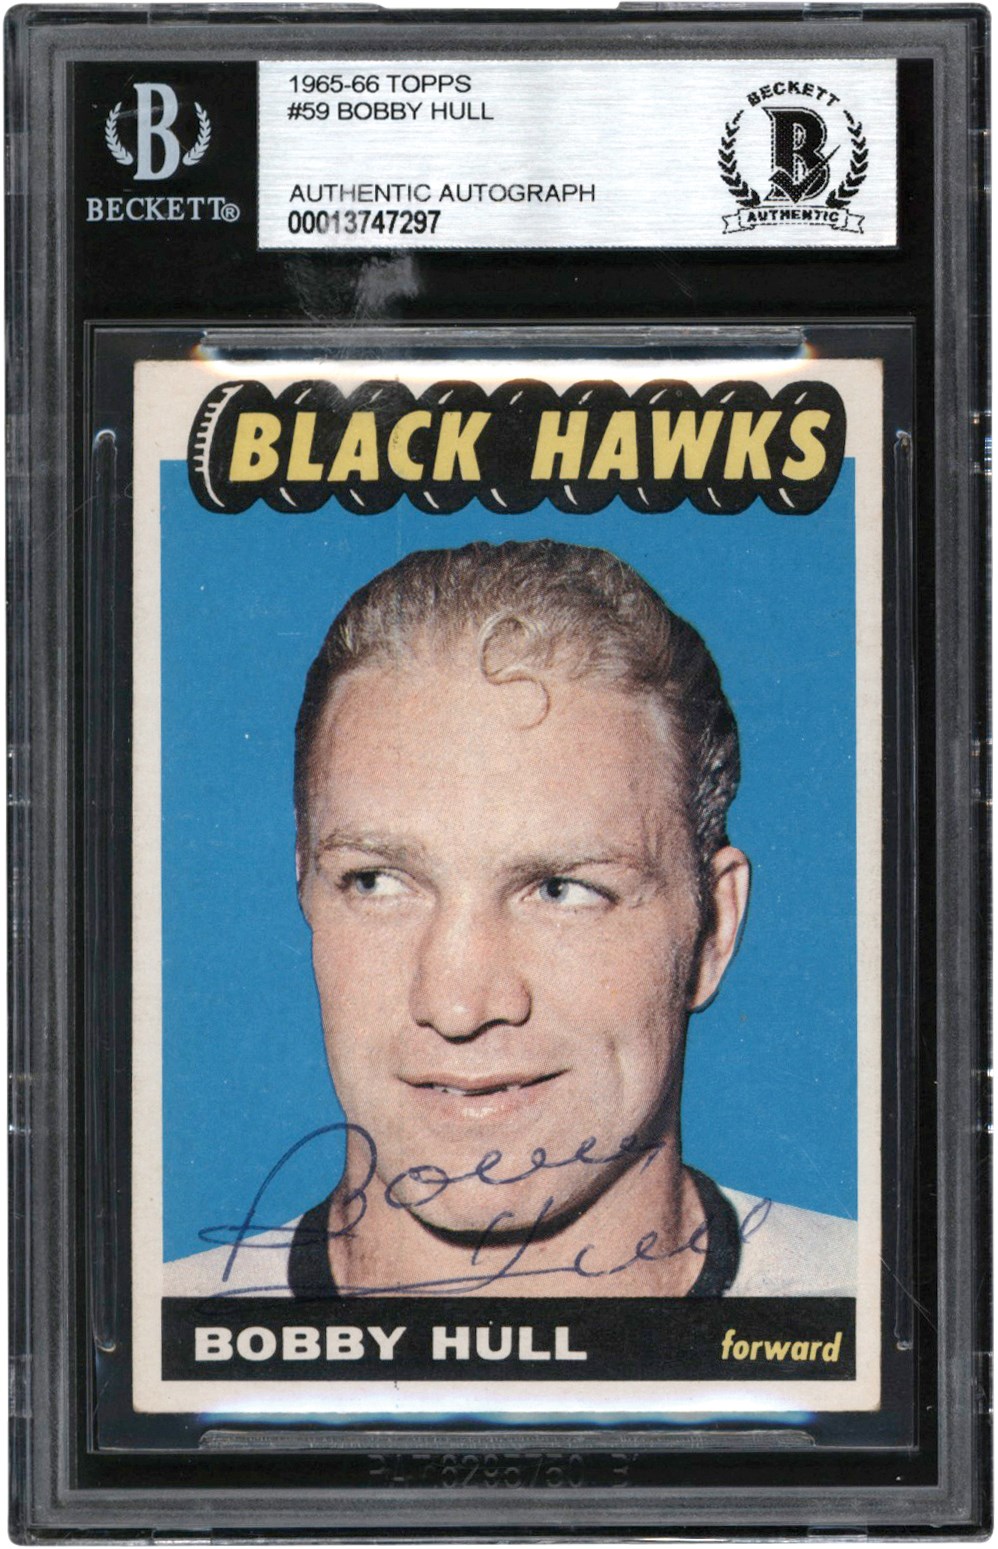 Hockey Cards - 1965-1966 Topps Hockey #59 Bobby Hull Autographed Card Beckett